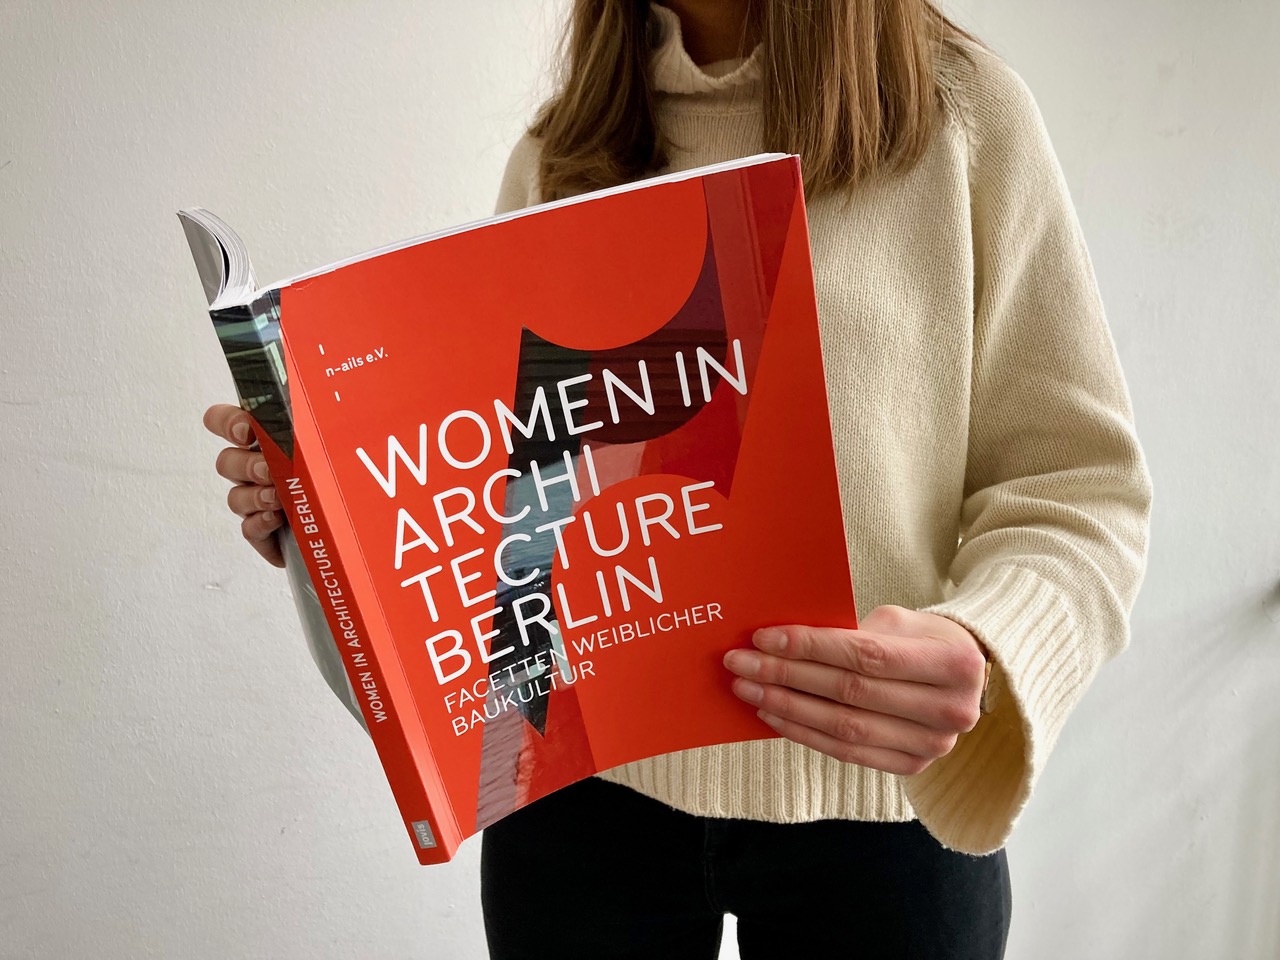 Eine Frau liest das Buch "Women in Architecture Berlin"